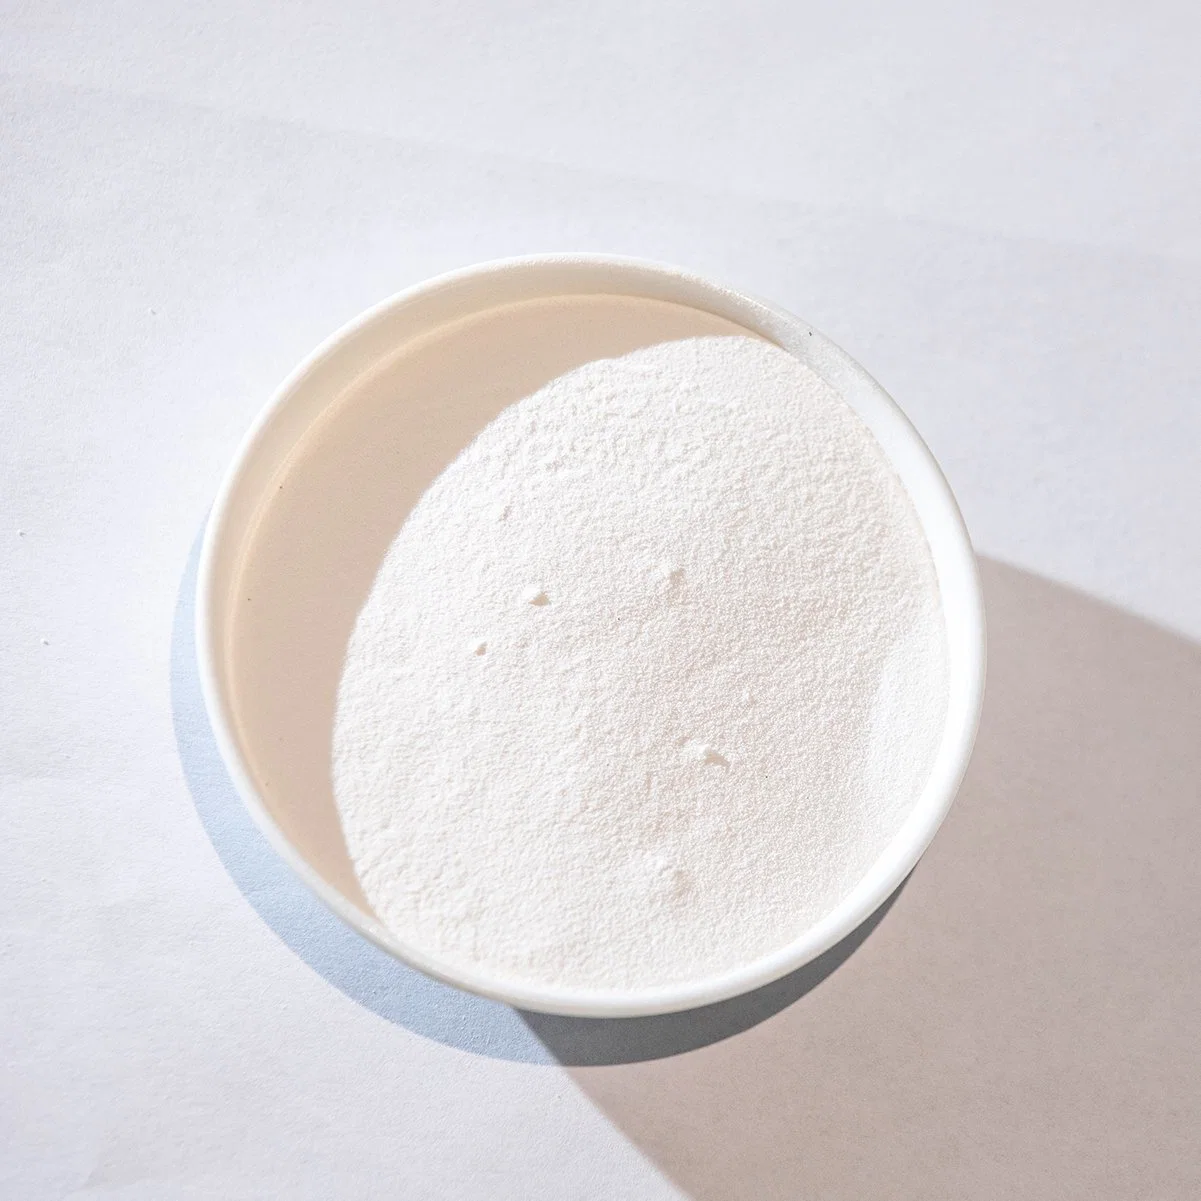 Aminoácidos seda pó branco Produtos cosméticos cuidados da pele crus Material